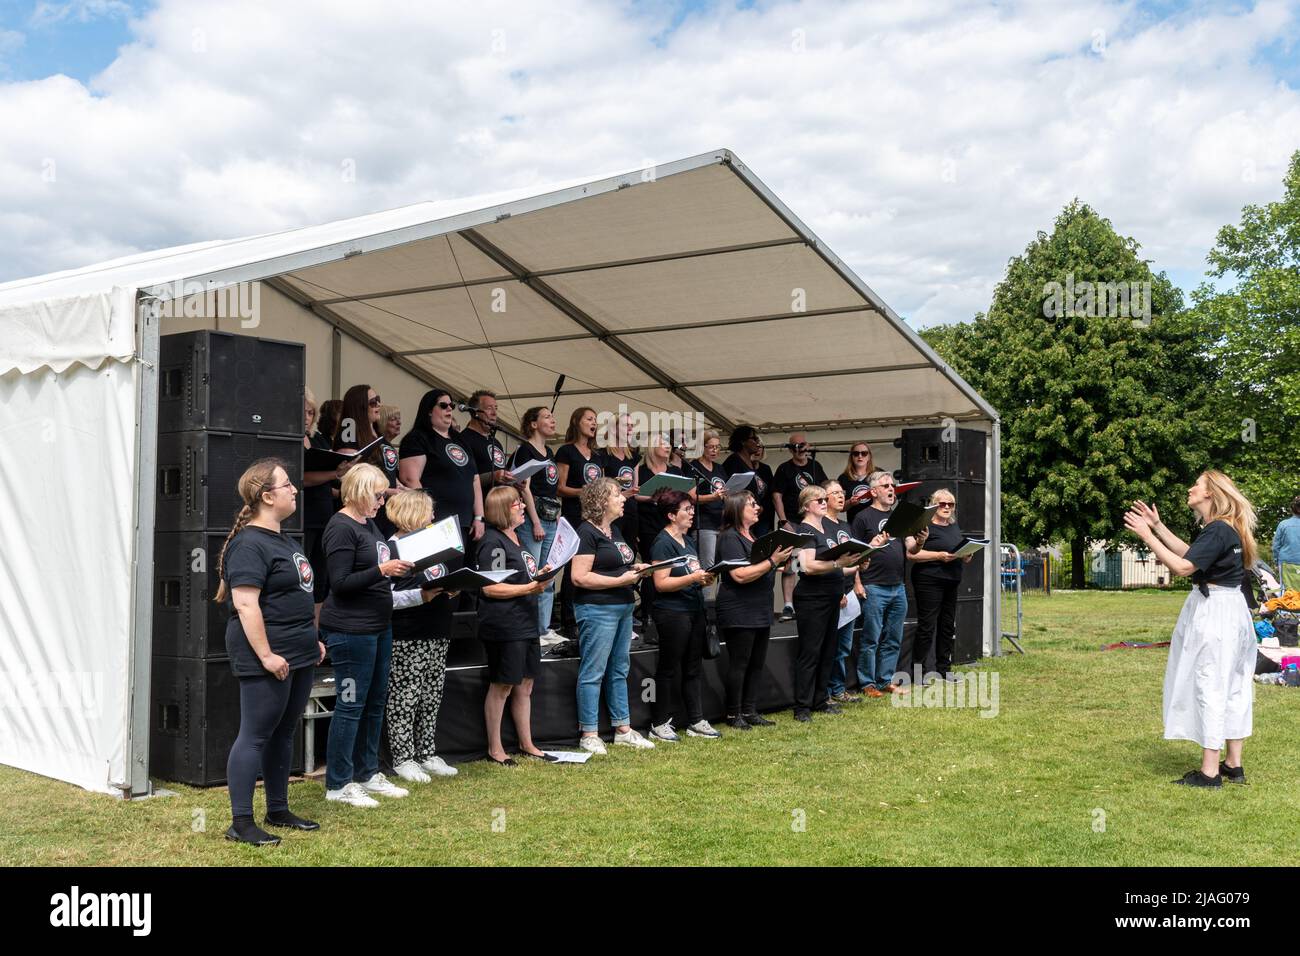 VoxChoir, eine soziale Gesangsgruppe, tritt auf der Bühne bei einem Outdoor-Event in Farnborough, Hampshire, England, Großbritannien, auf Stockfoto